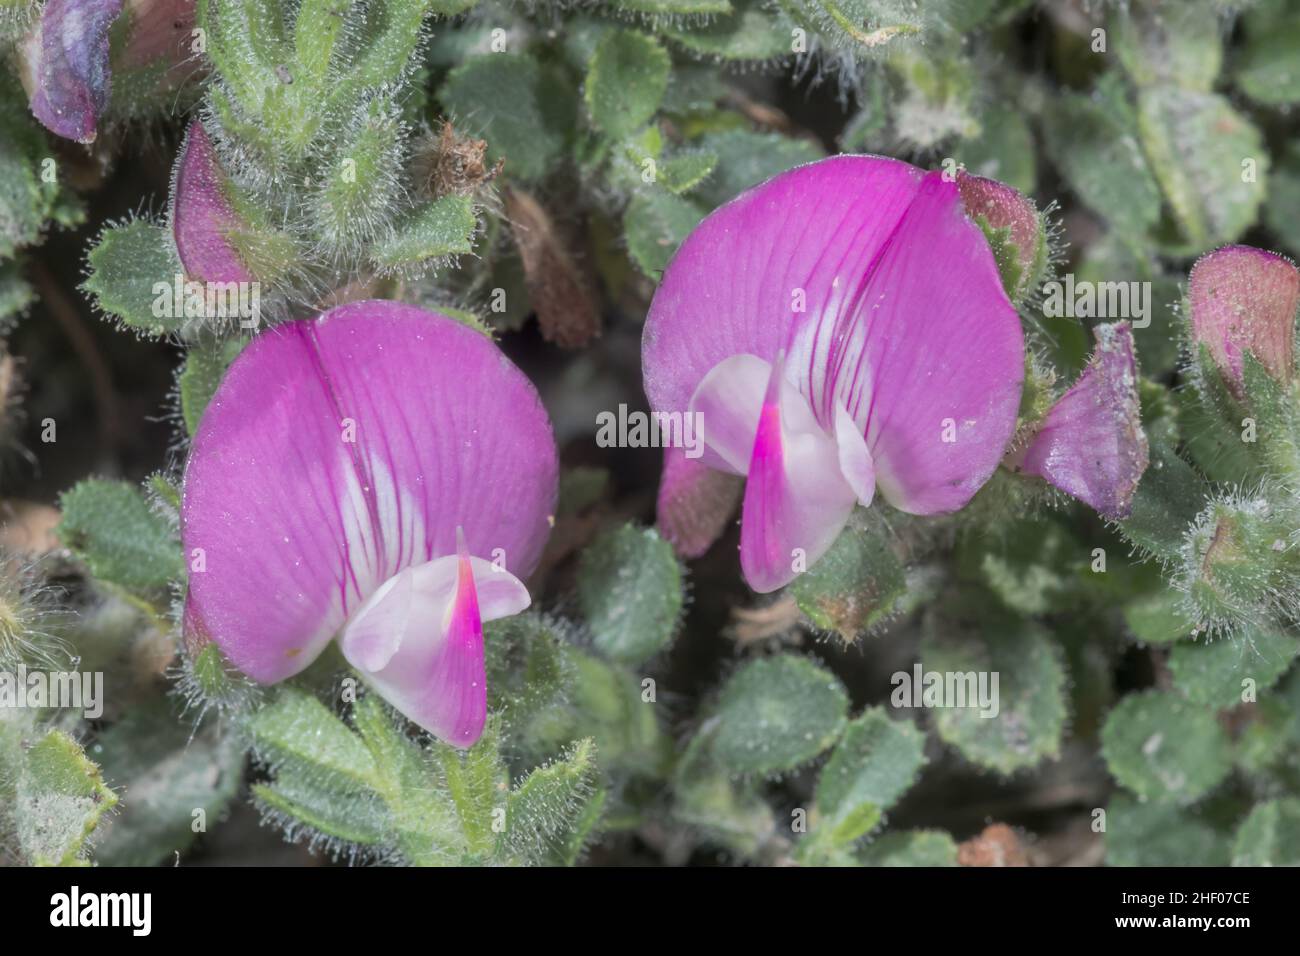 Retharrow commun (Ononis repens), Fabaceae.Île de Wight, Royaume-Uni Banque D'Images